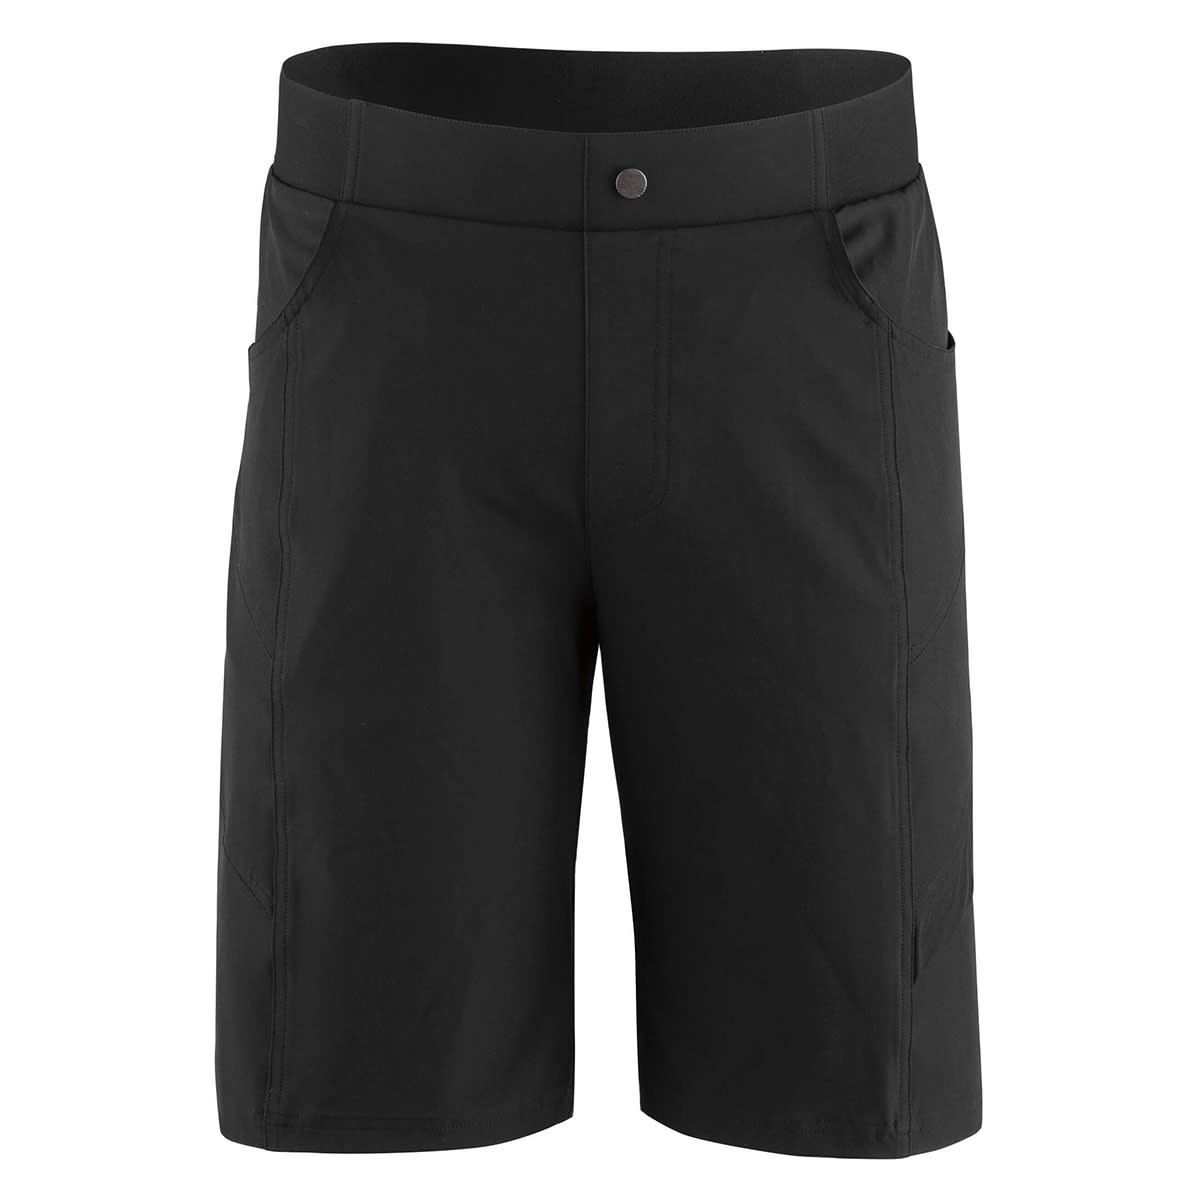 Garneau Range 2 Shorts